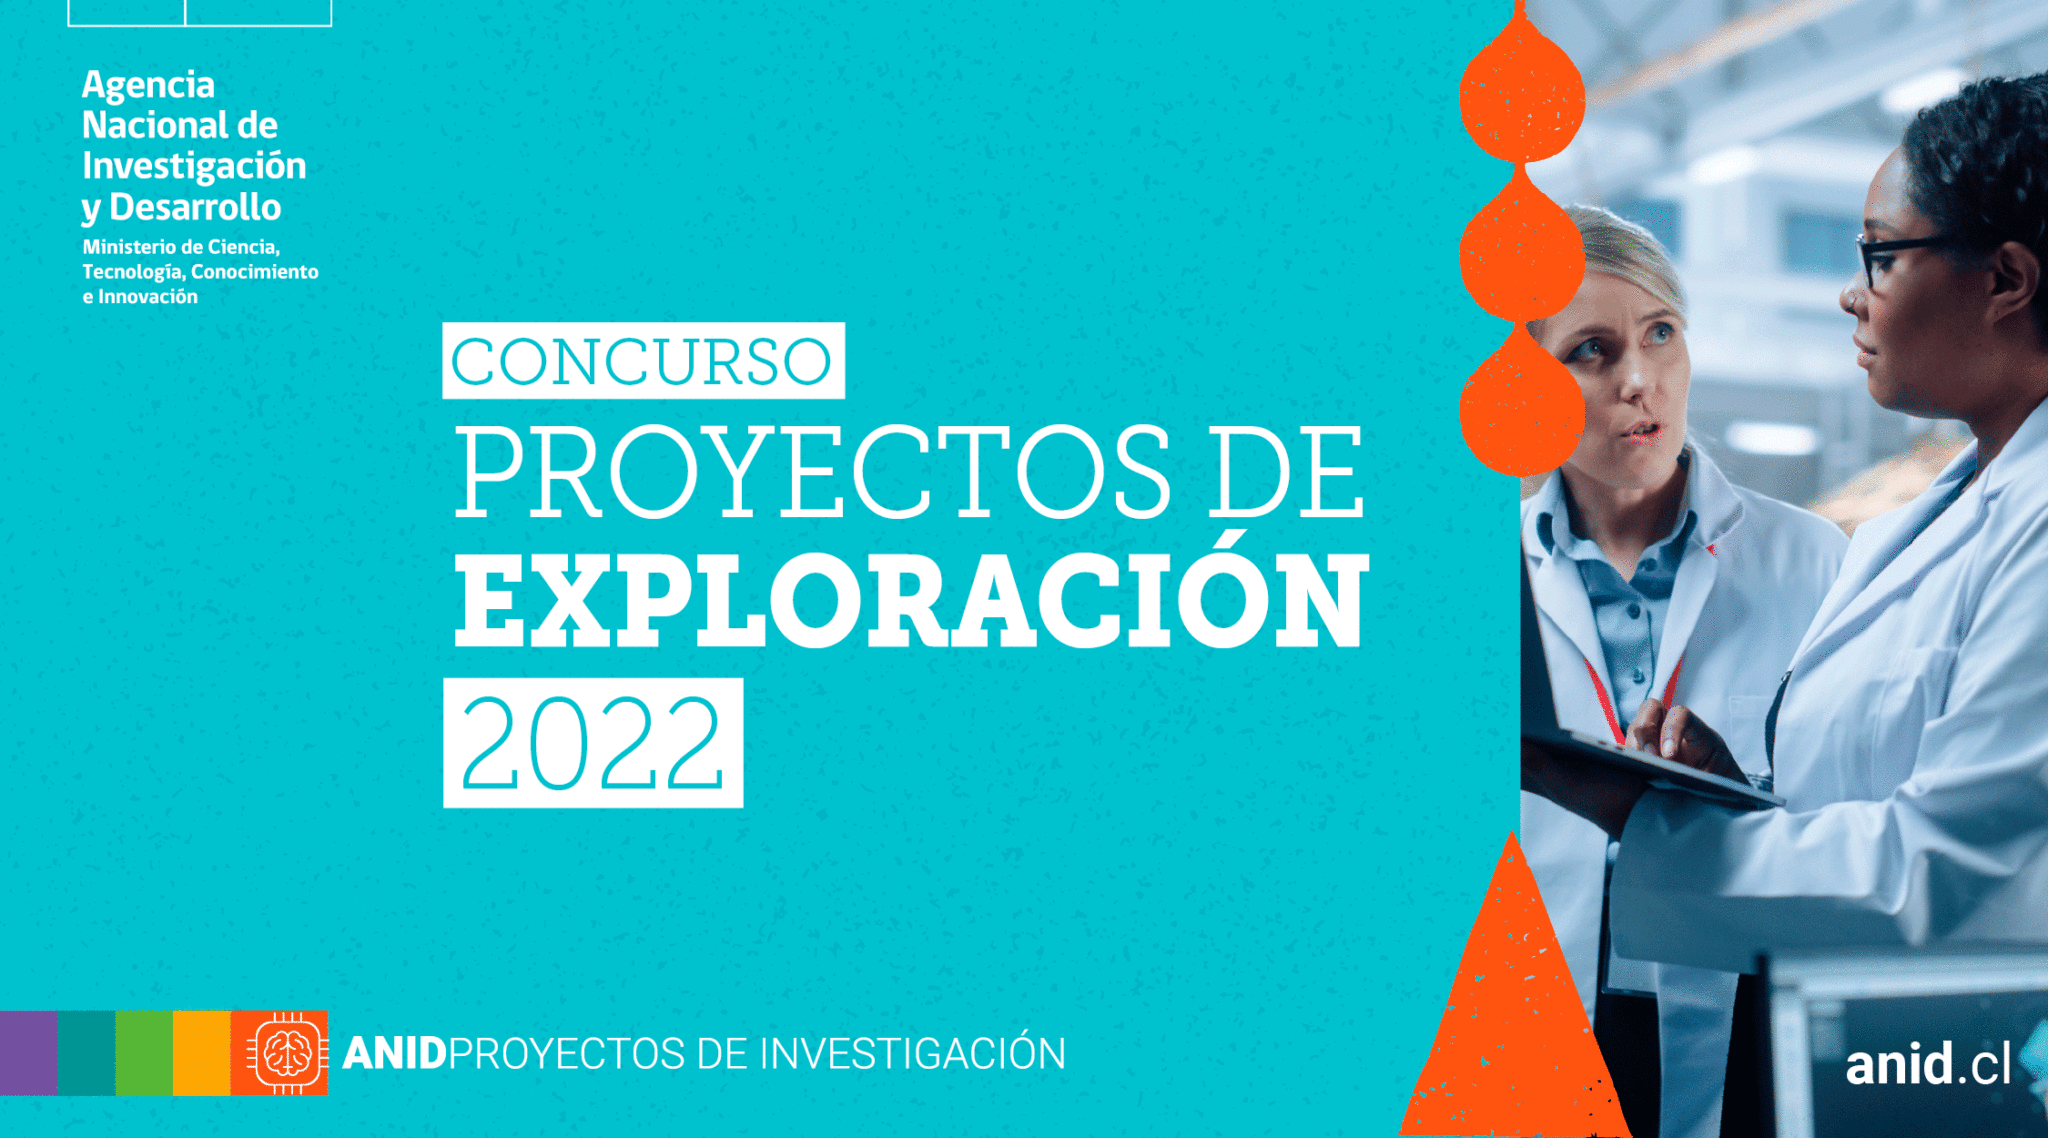 Académicos del ICI se adjudican Proyecto de Exploración ANID 2022